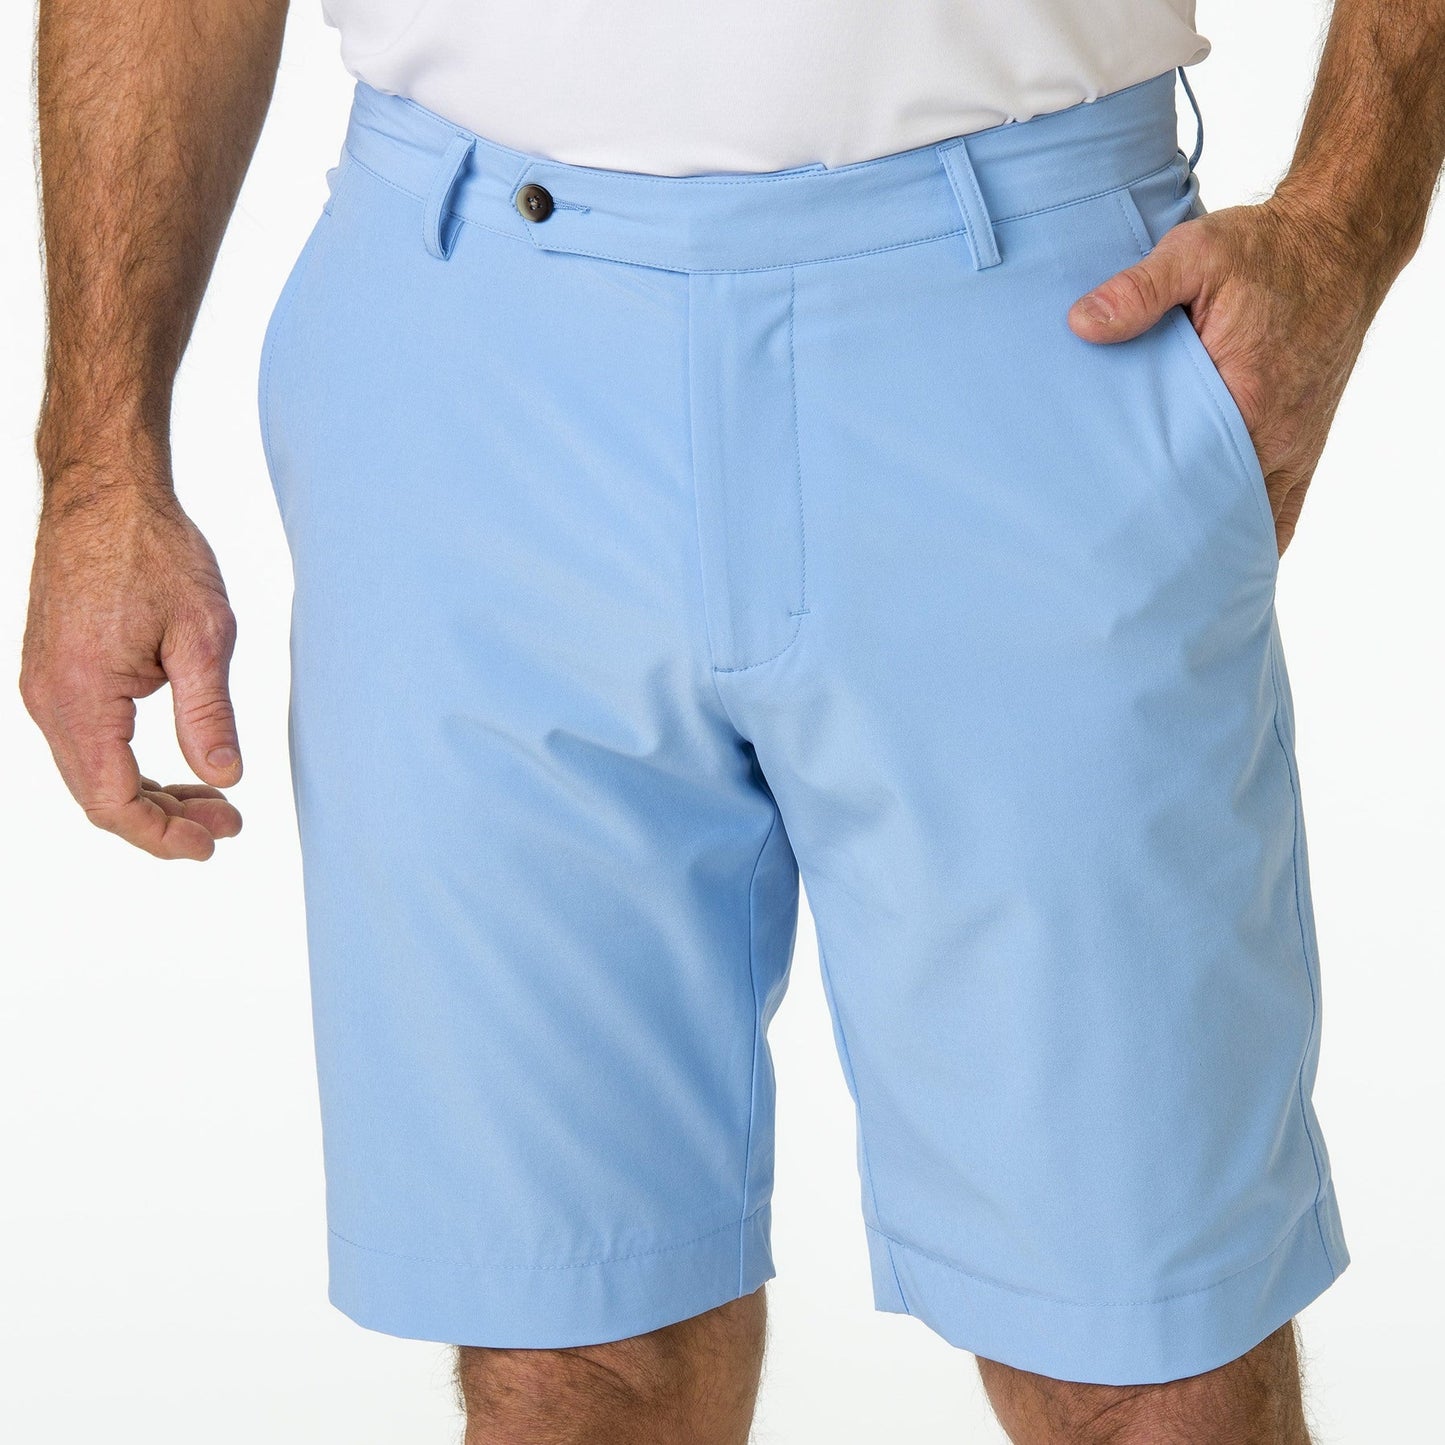 Bermuda Shorts - Solid Color